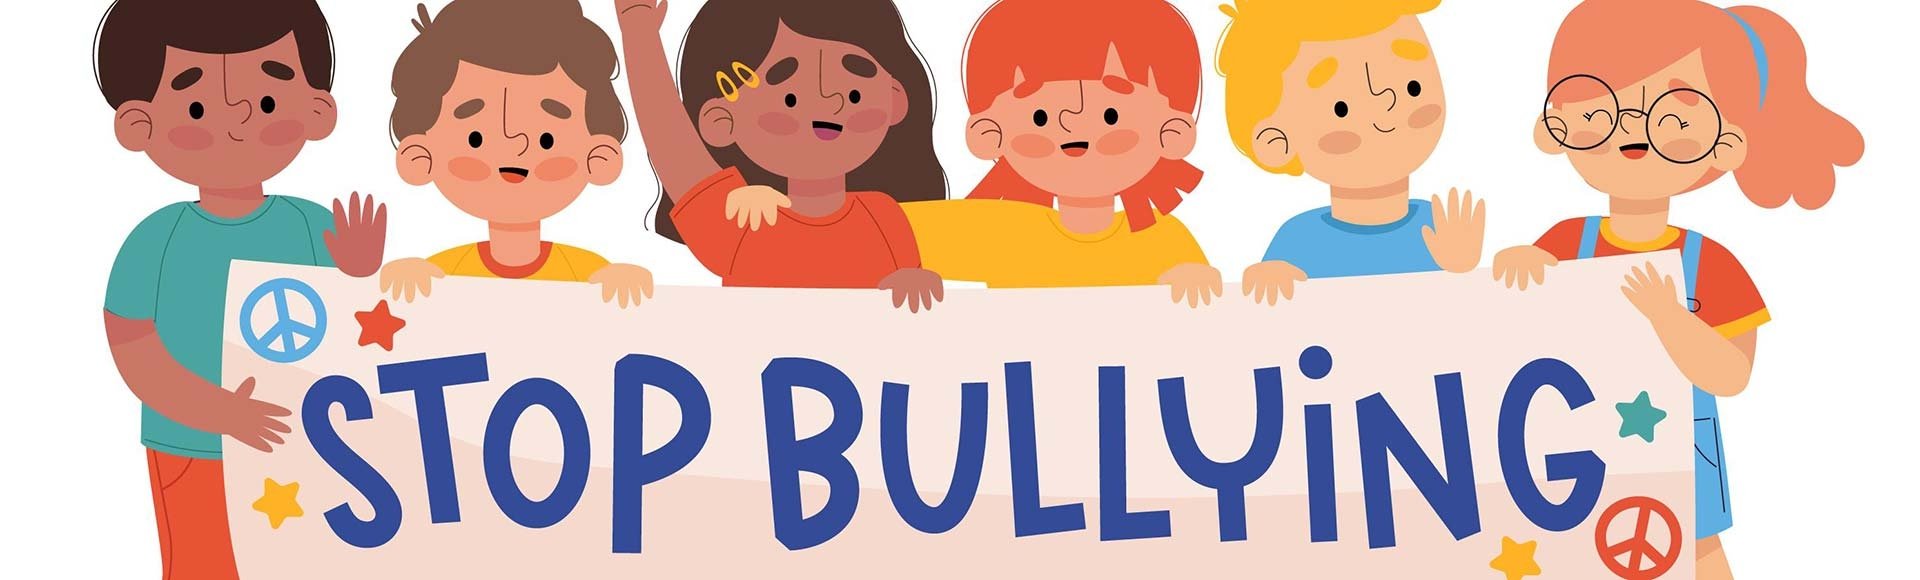 6 τύποι γονέων που «ευθύνονται» για το bullying